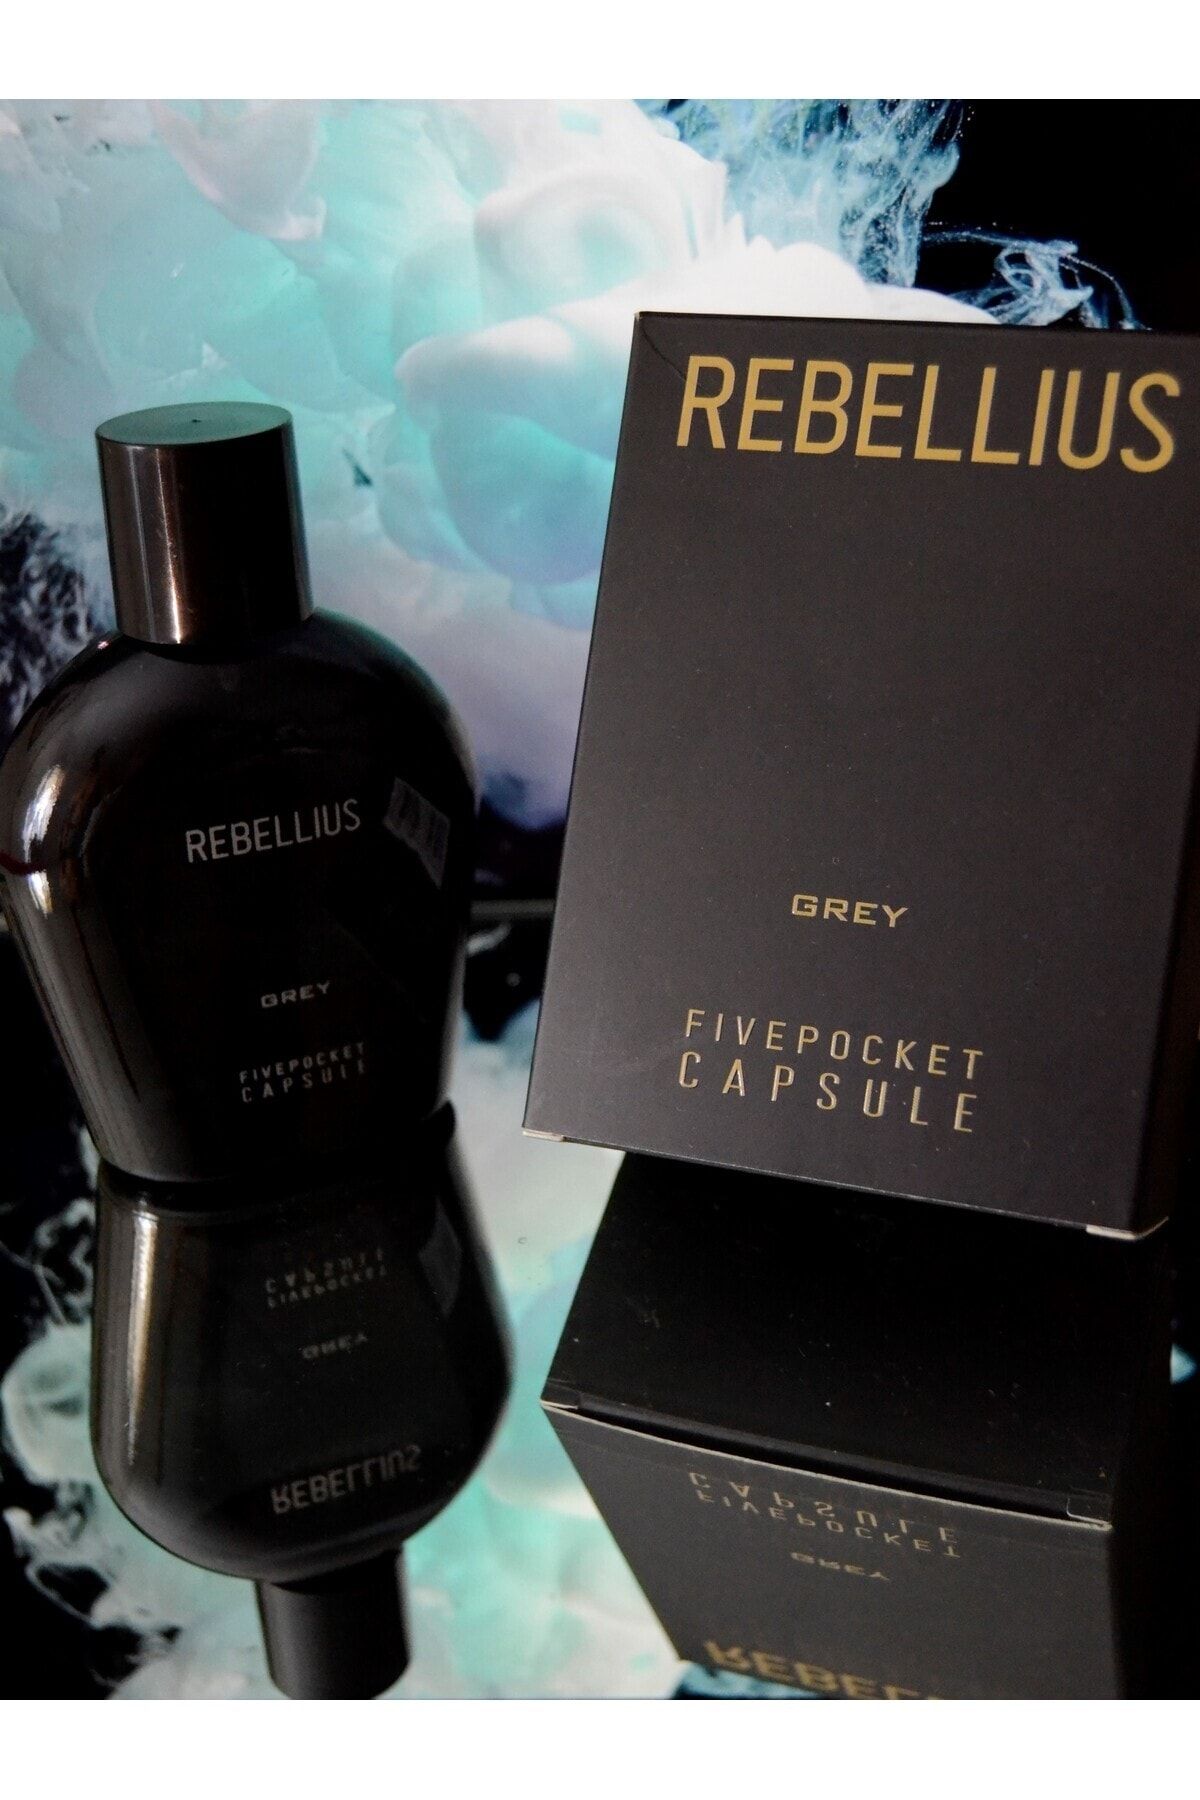 Five Pocket Erkek Parfüm - Rebellıus Grey Capsule